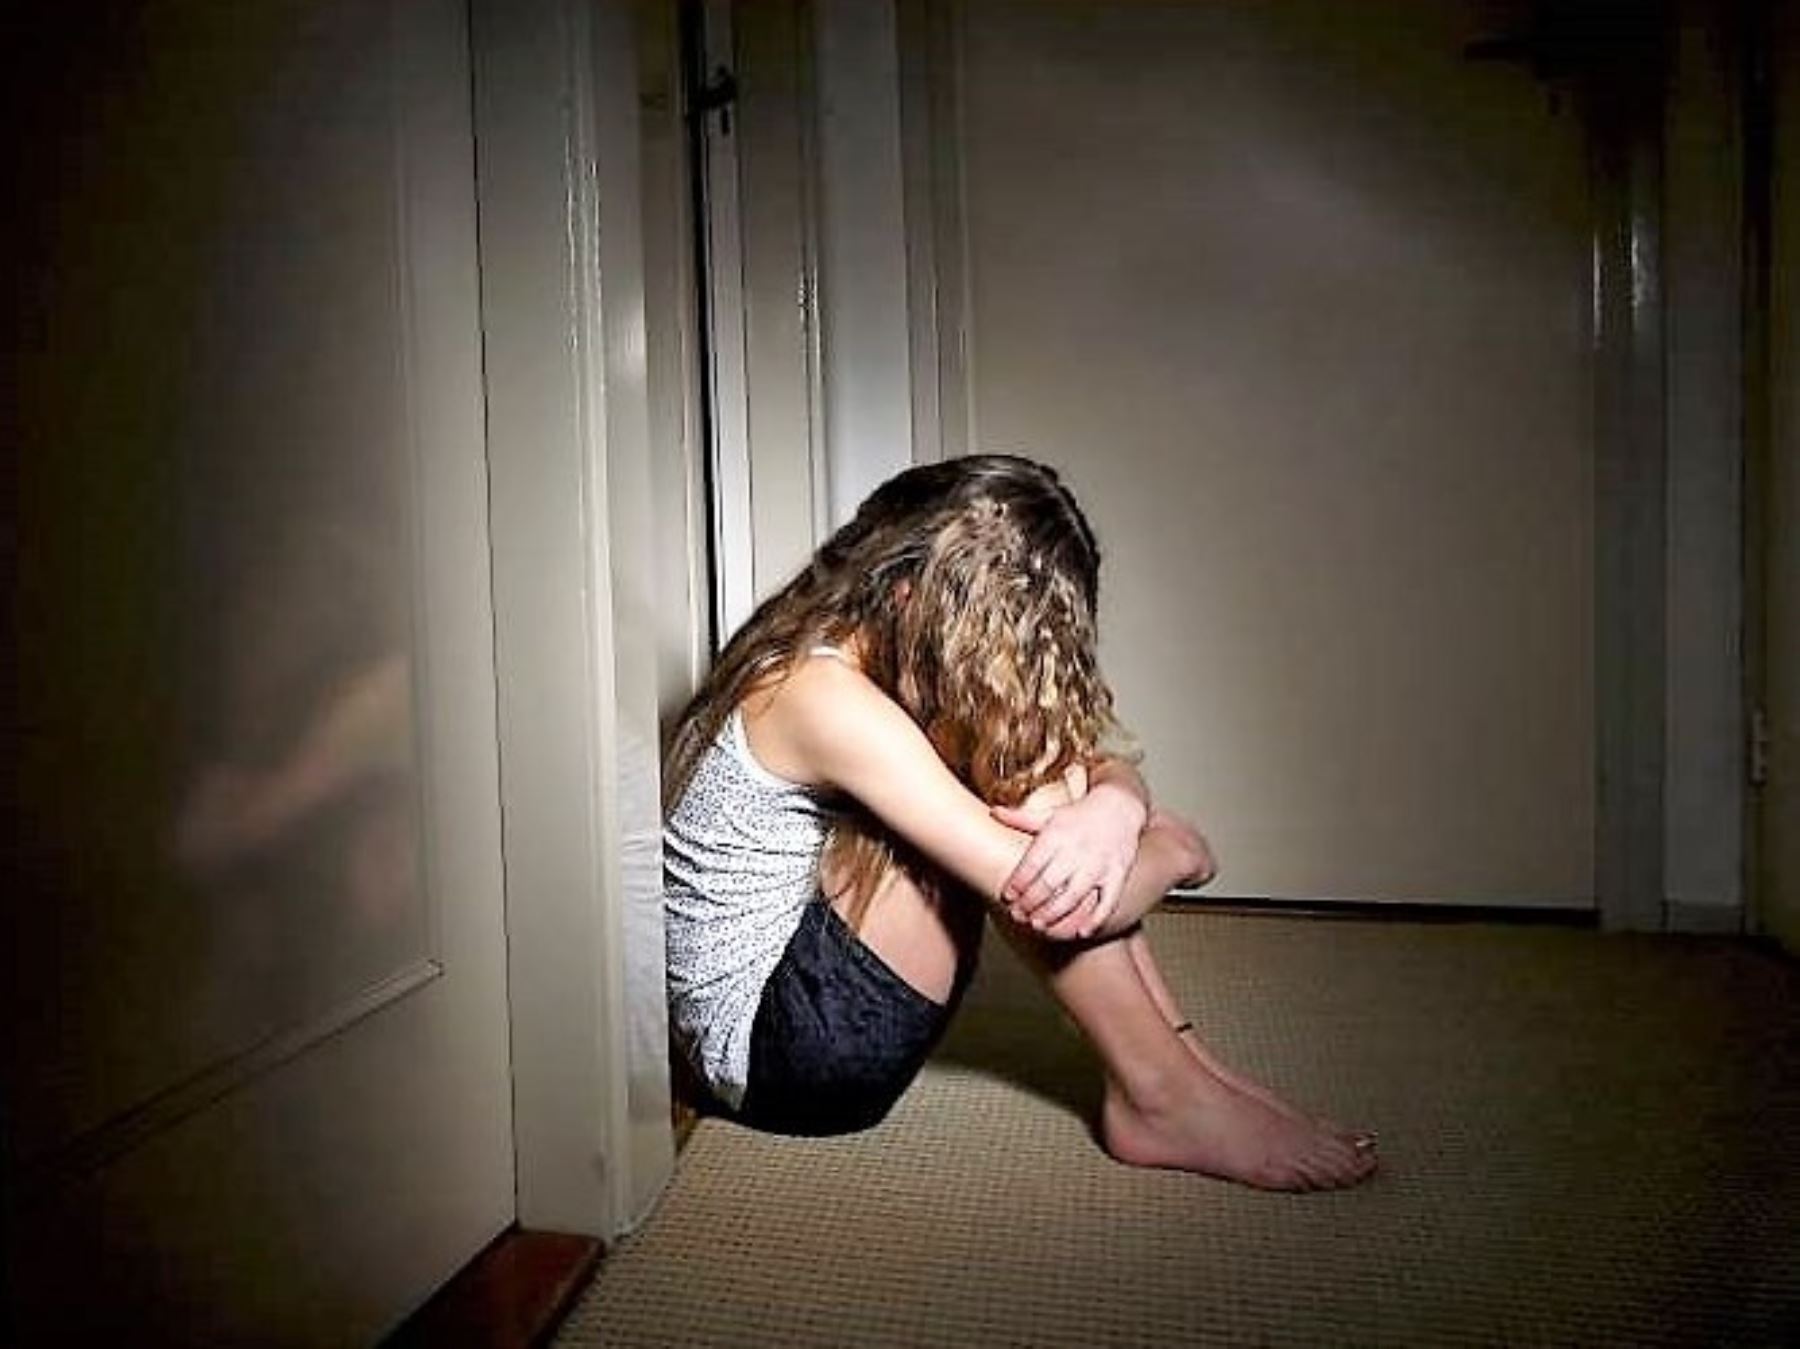 Suicidio en adolescentes: ¿cuáles son las señales de alerta y cómo prevenirlo? [video]